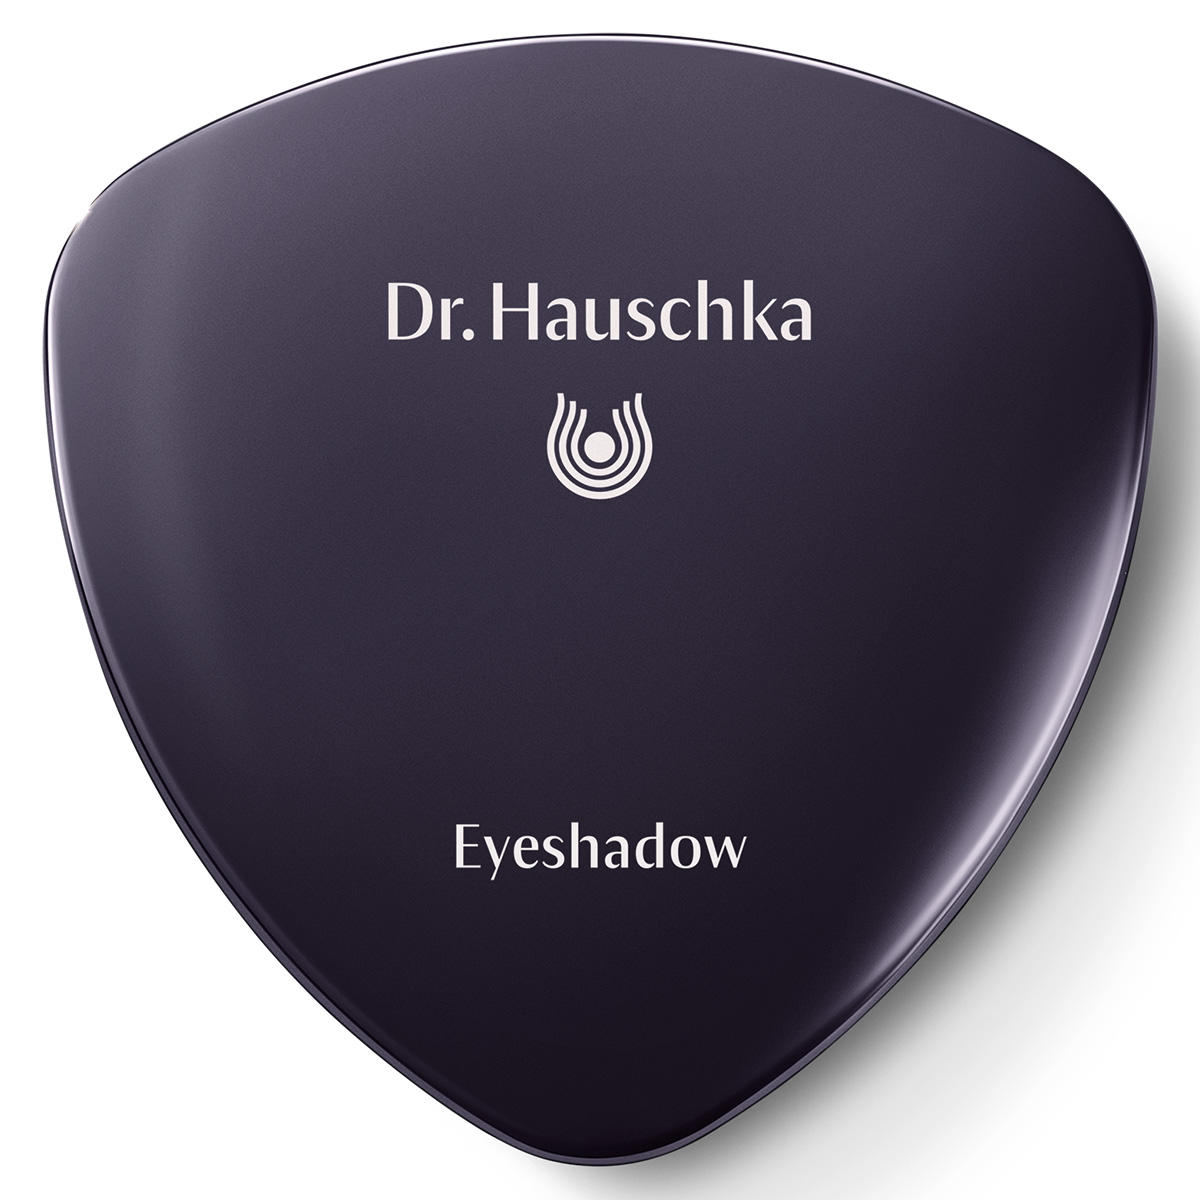 Dr. Hauschka Eyeshadow 04 verdelite, Inhalt 1,4 g - 2